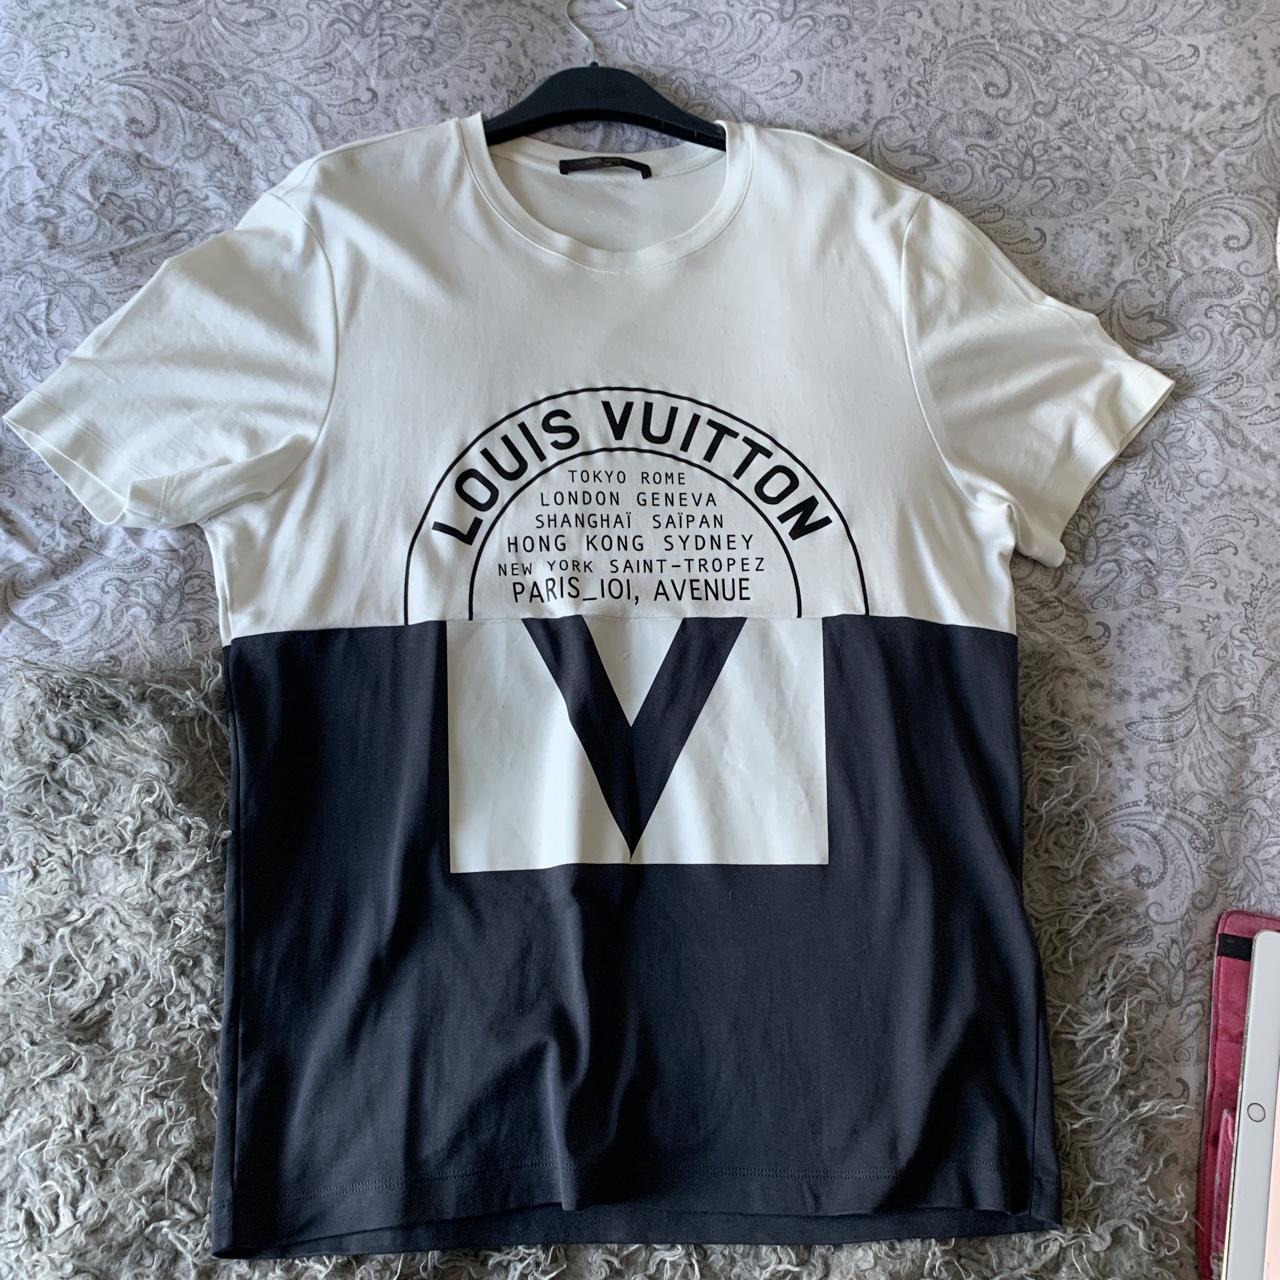 Louis Vuitton Men's T-shirts